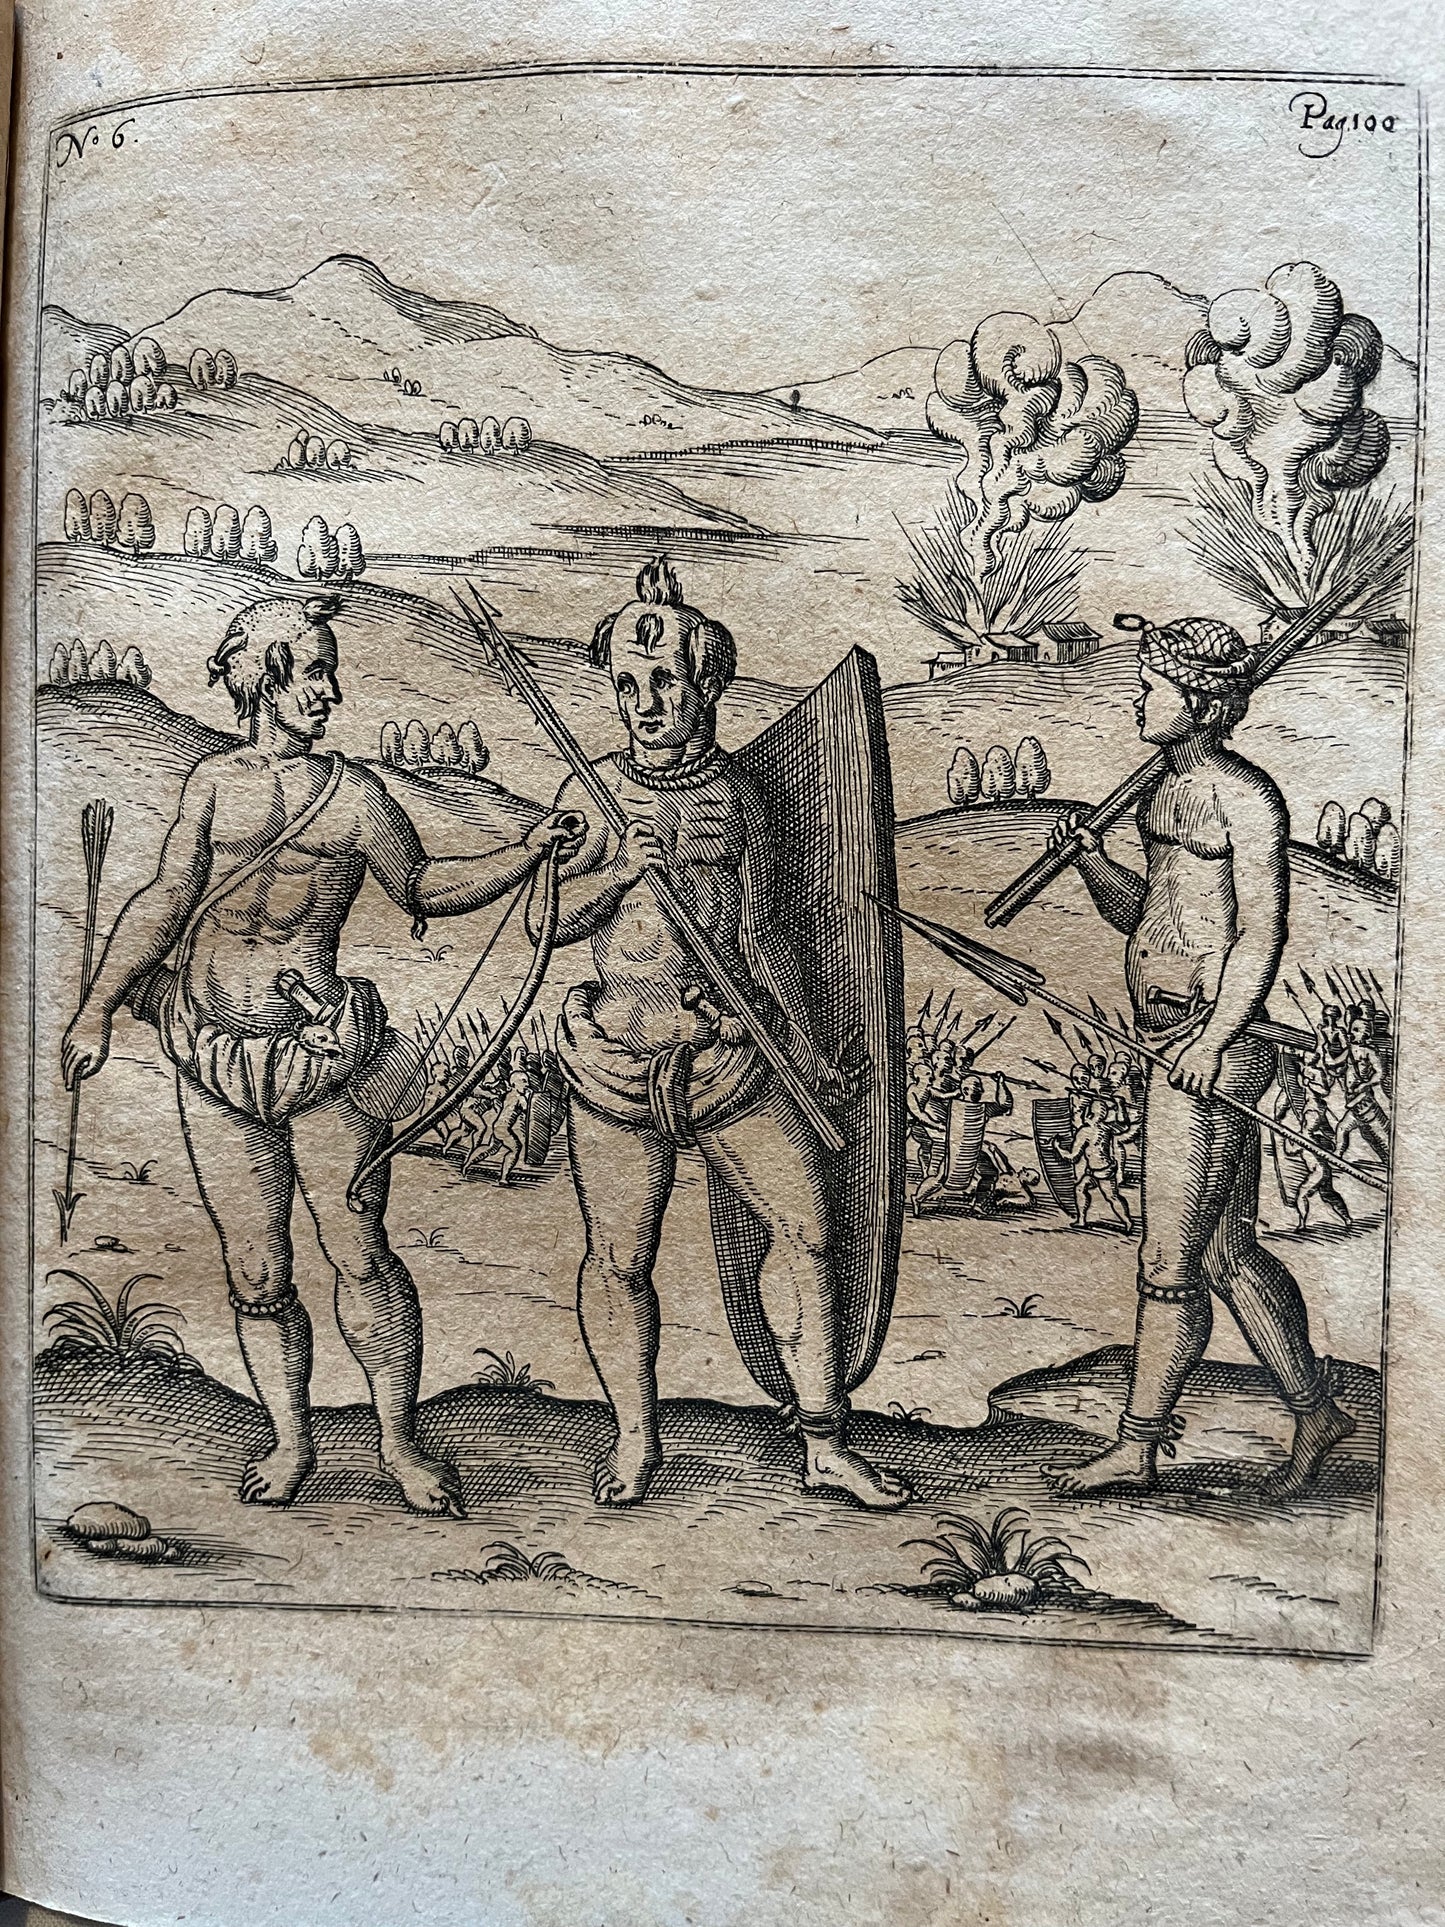 Extremely Rare - West Africa -  "Siebende Schiffahrt. In das goldreiche Königreich Guineam, in Africa gelegen..." - Hulsius - 1624 -  Pieter de Marees